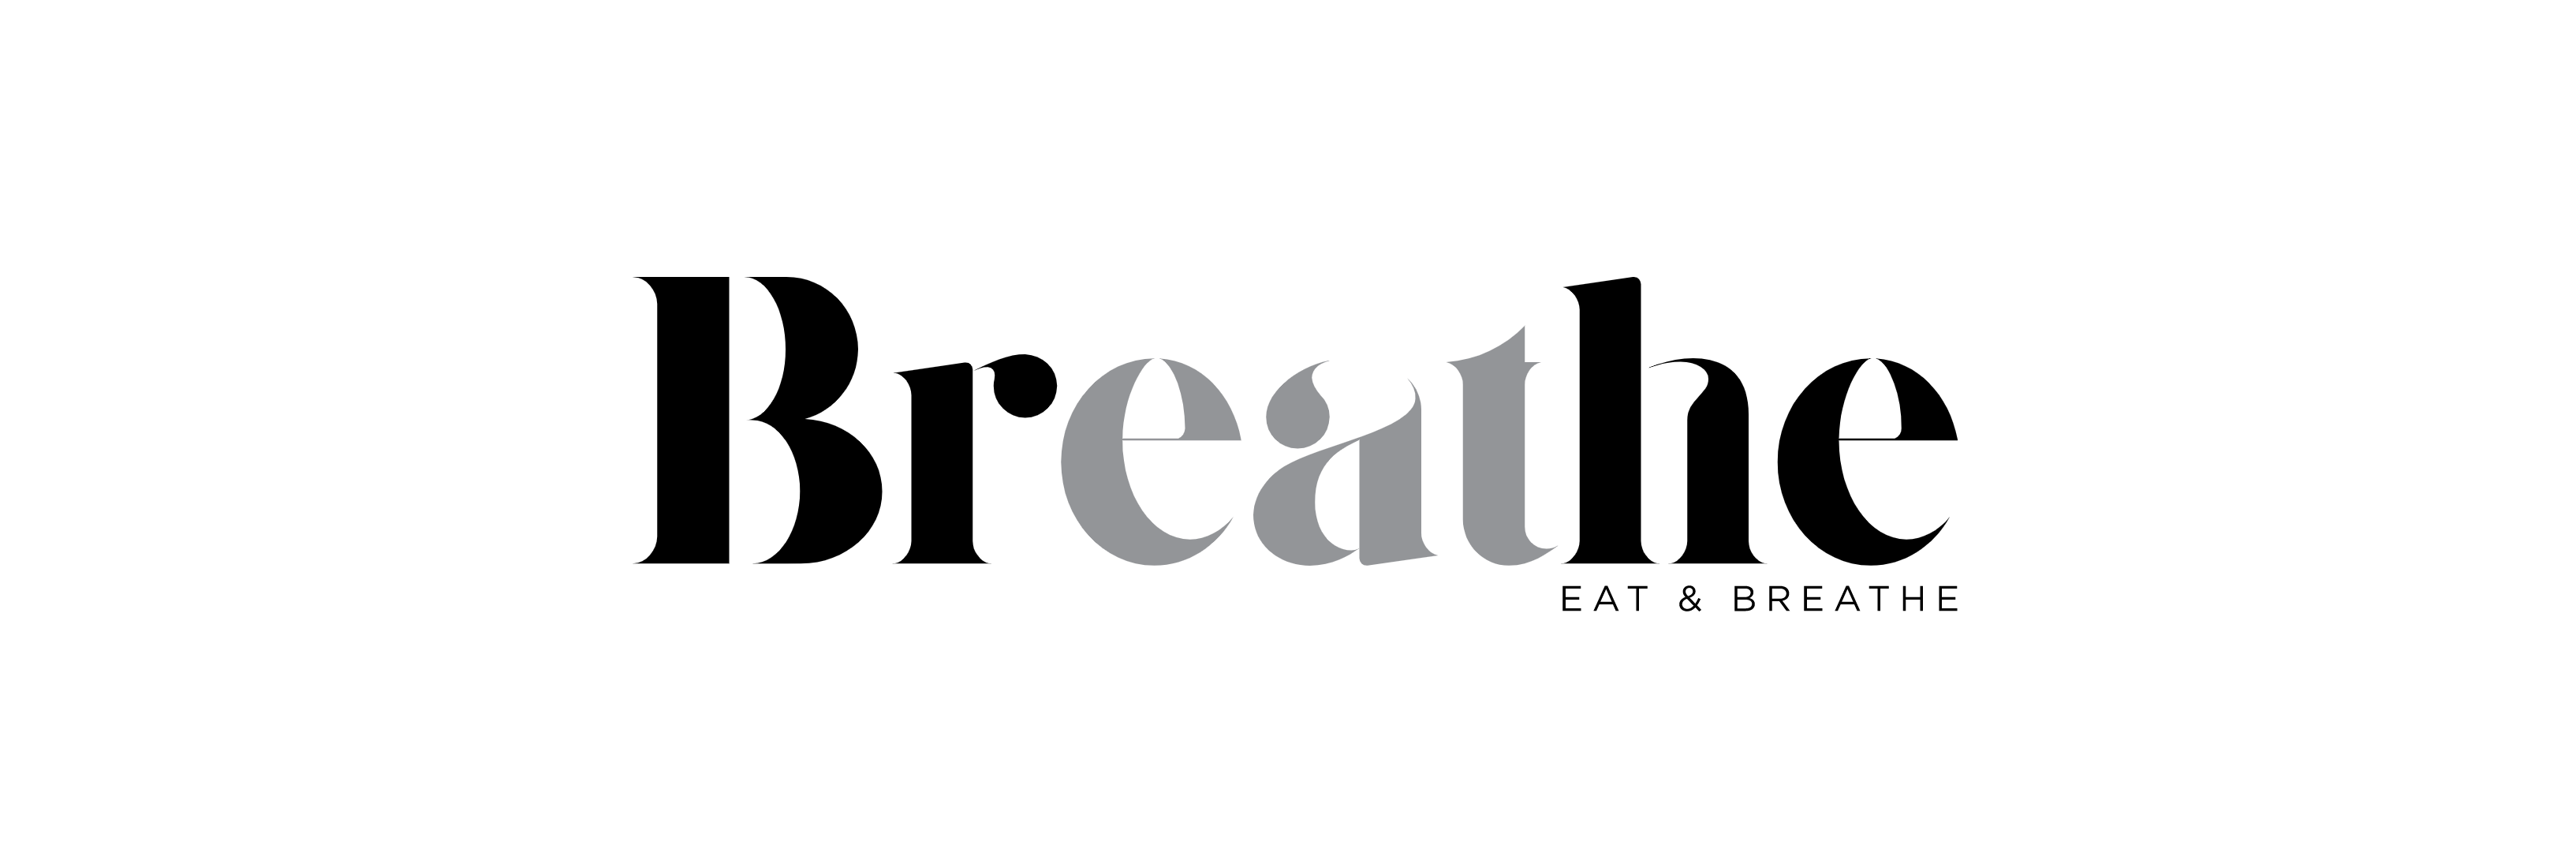 (c) Eat-and-breathe.co.uk